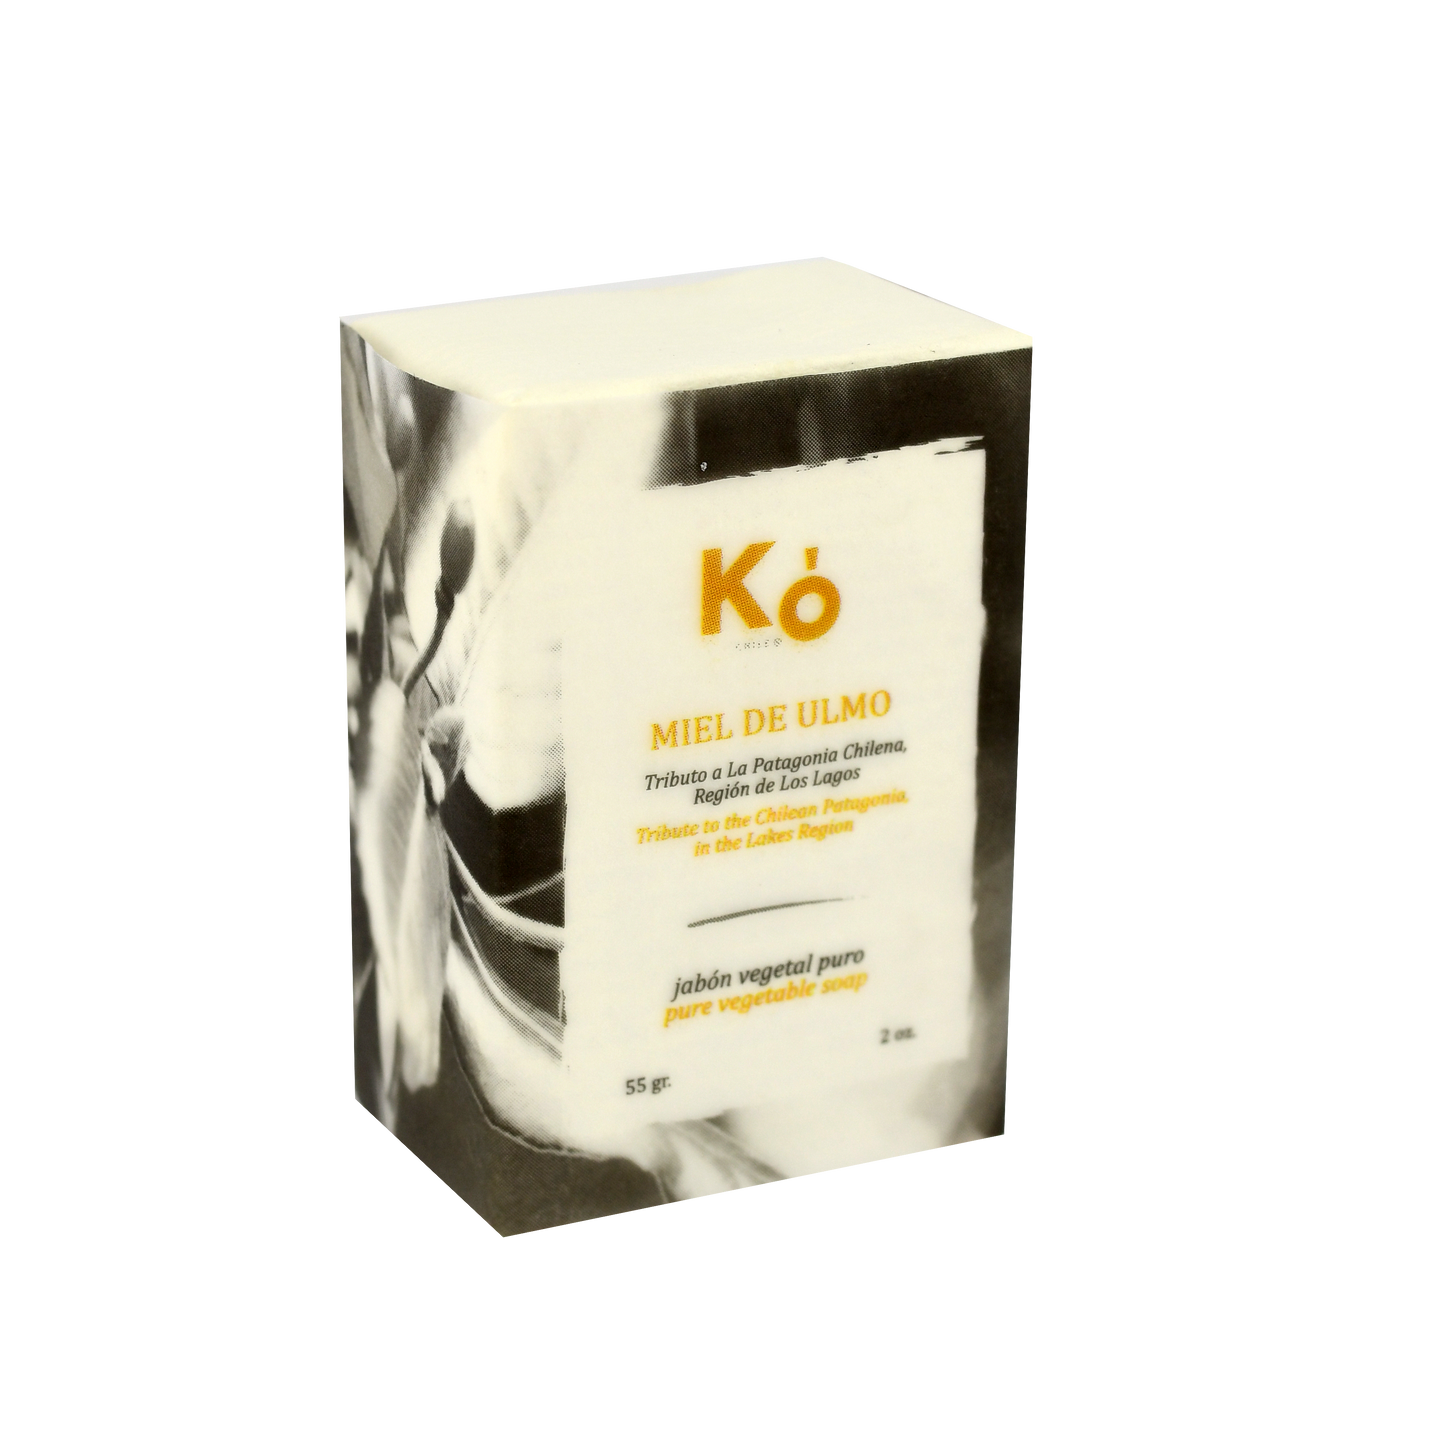 Jabon artesanal Ko, hecho a base de aceite de oliva y coco, que hidratan y eliminan el efecto de manos partidas. Enriquecido con aceites esenciales de ylang ylang, mejorana, salvia, lemongrass y miel de ulmo del sur de Chile. Tiene un efecto de aromaterapia relajante, revitalizante, y la miel actúa como antibacterial.  ¡Disfruta de un Spa en casa!  Los productos Ko son hechos con ingredientes naturales.